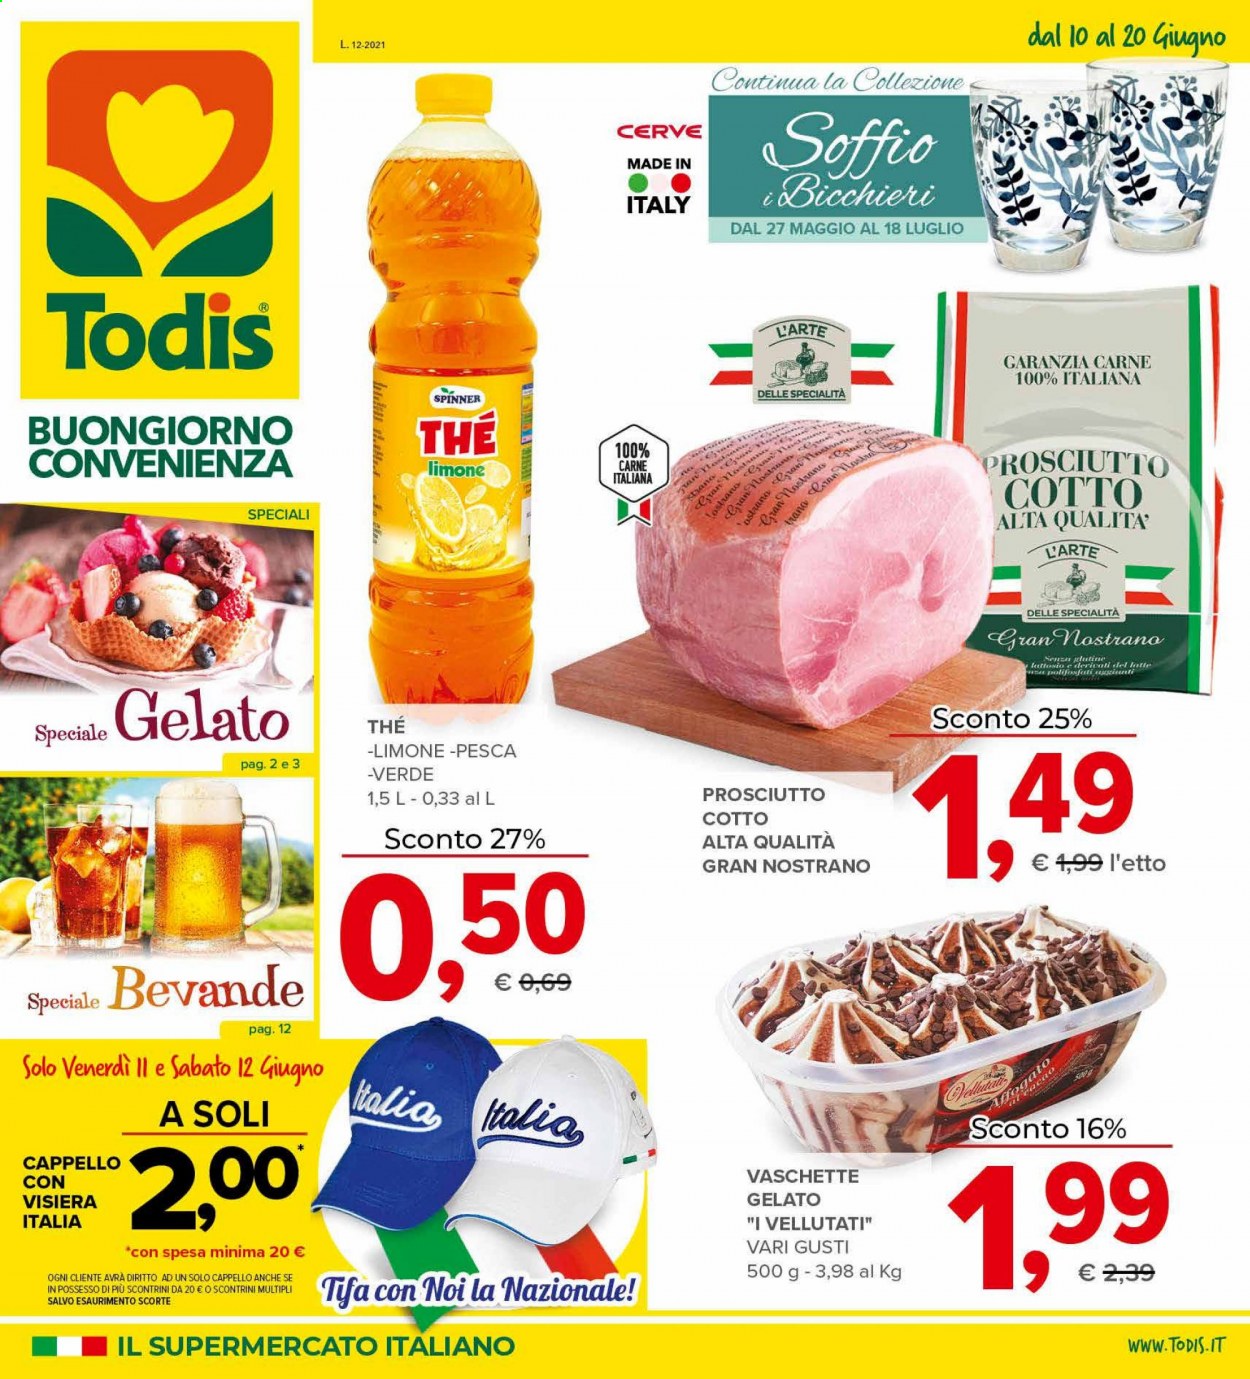 thumbnail - Volantino Todis - 10/6/2021 - 20/6/2021 - Prodotti in offerta - prosciutto, latte, gelato, bicchieri, visiera. Pagina 1.